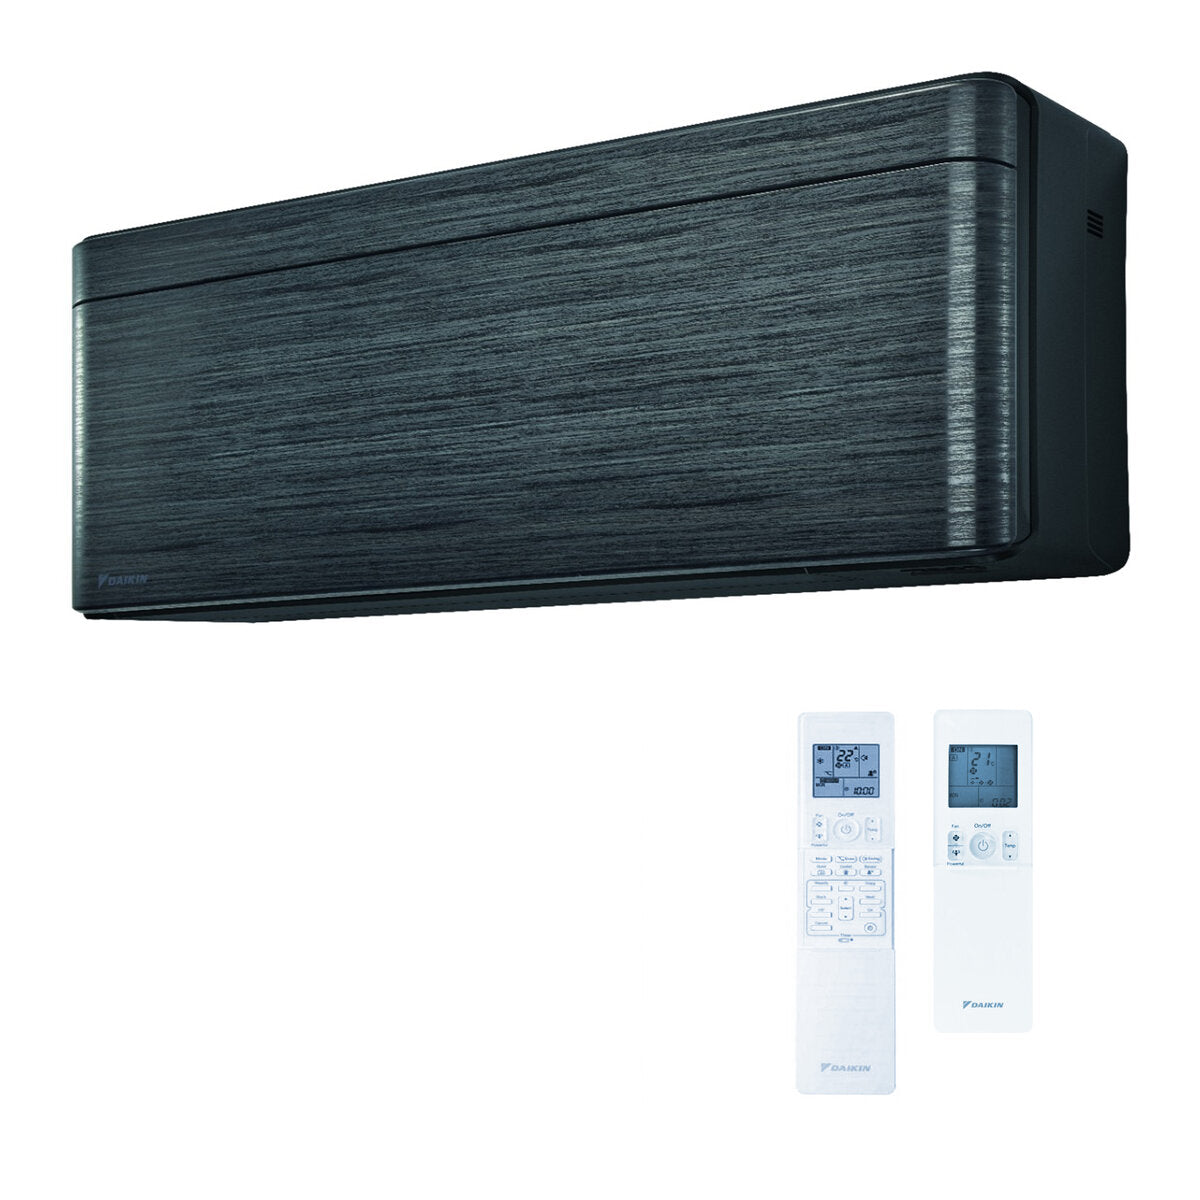 Daikin Stylish dual split air conditioner 7000 + 15000 BTU inverter A +++ wifi outdoor unit 5.0 kW